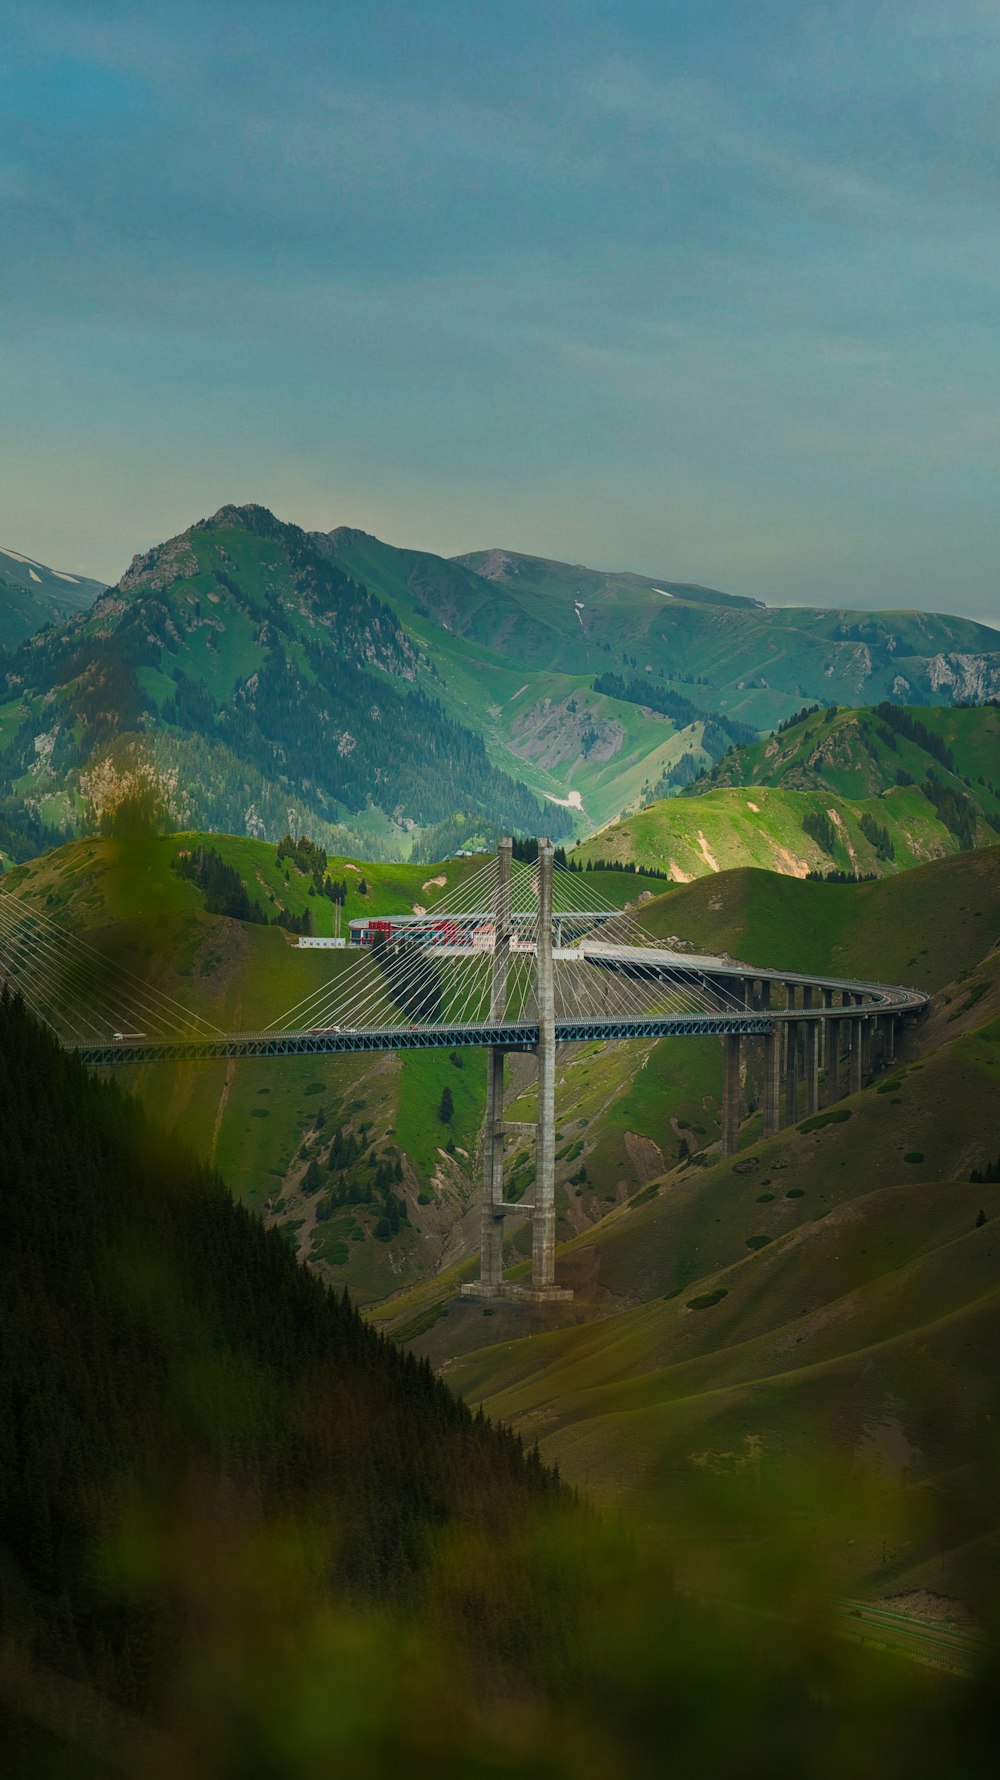 Un puente en medio de un valle con montañas al fondo